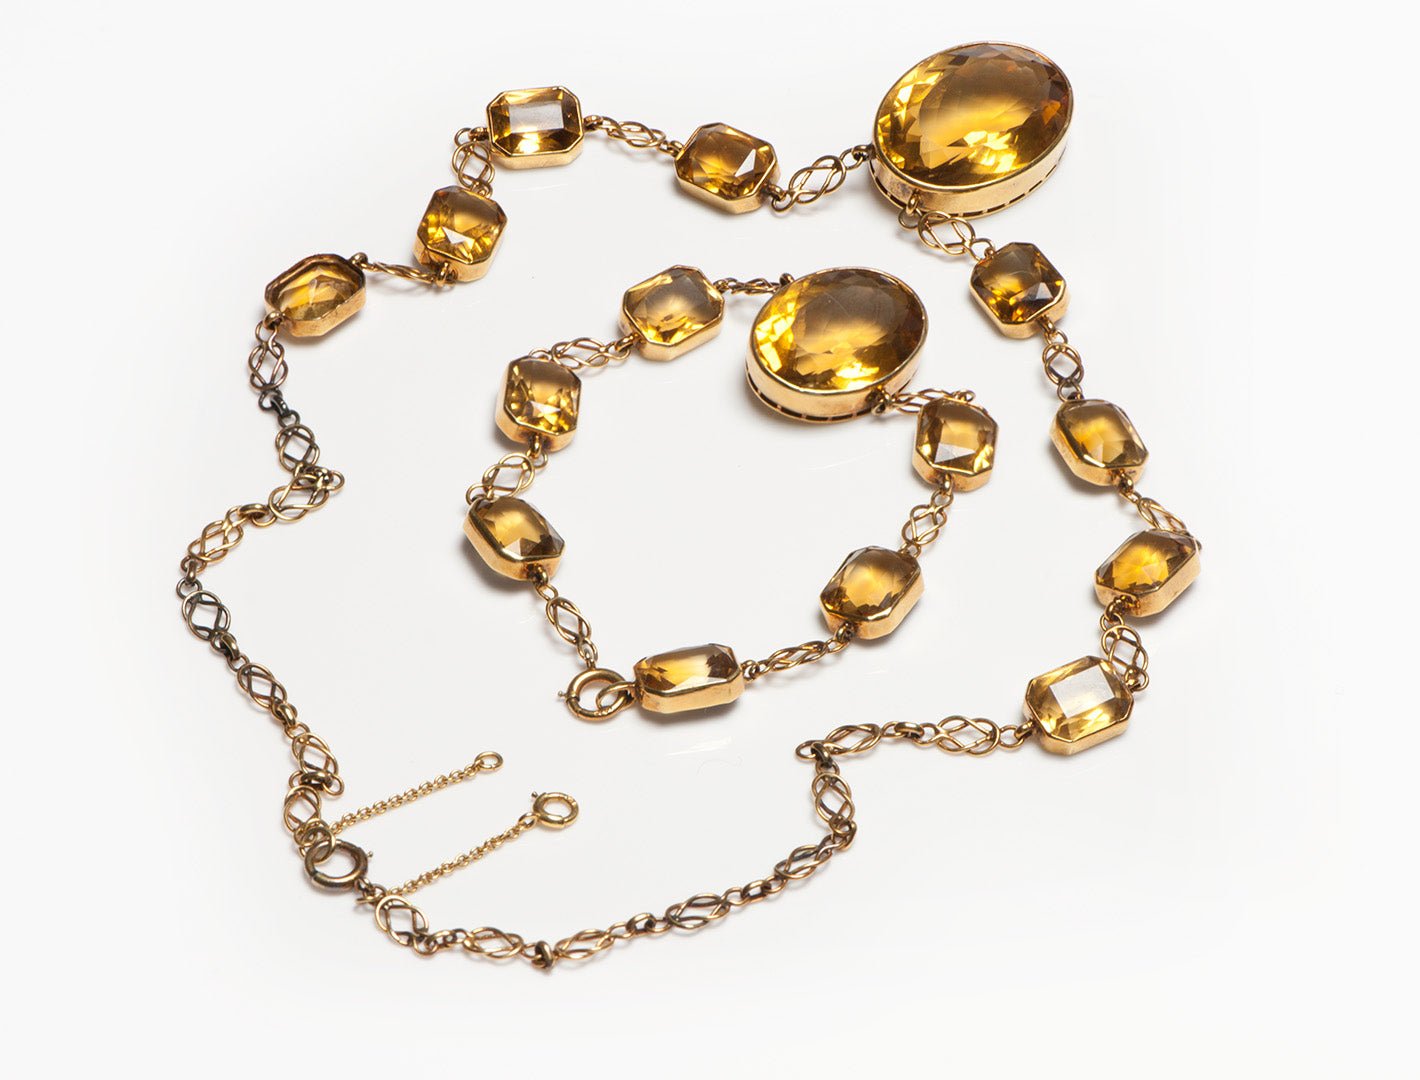 Antique Art Nouveau Gold Citrine Necklace and Bracelet